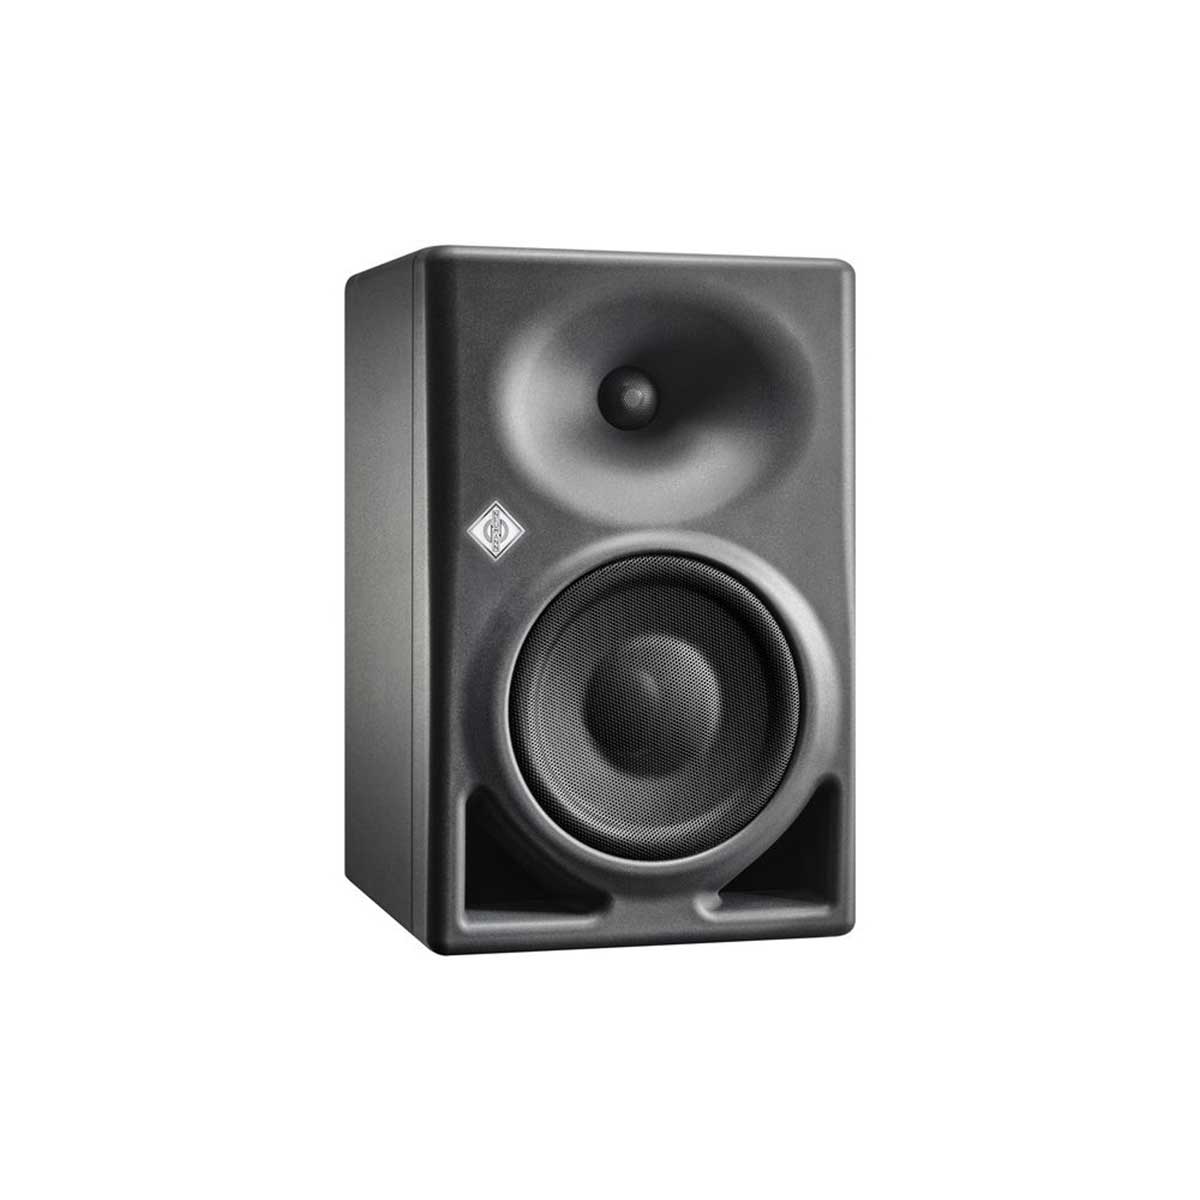 Neumann KH 150 Studio Monitor (Single)